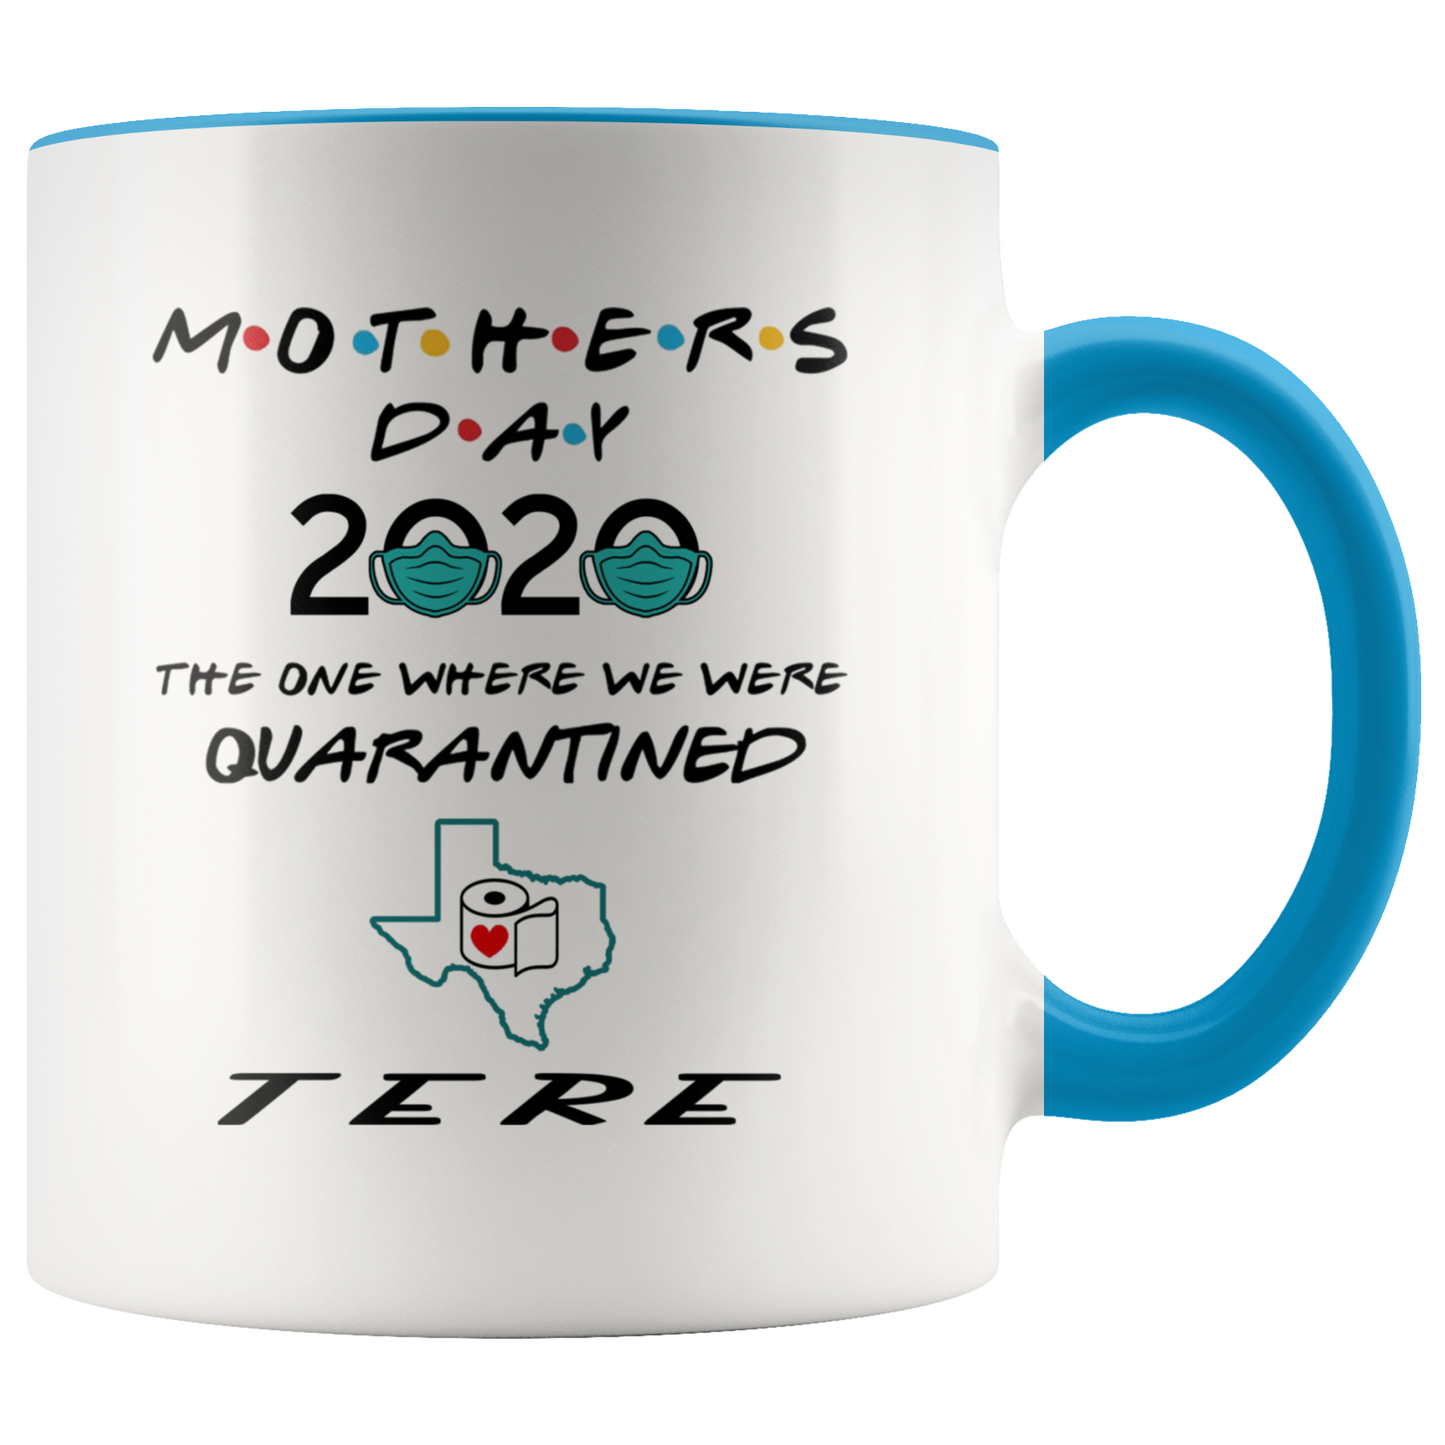 MUG01221353508-sp-26854 - [ Tere | Texas ] (CC_Accent_Mug_) Mothers Day 2020 Mug Quarantine - The One Where We Were Quar